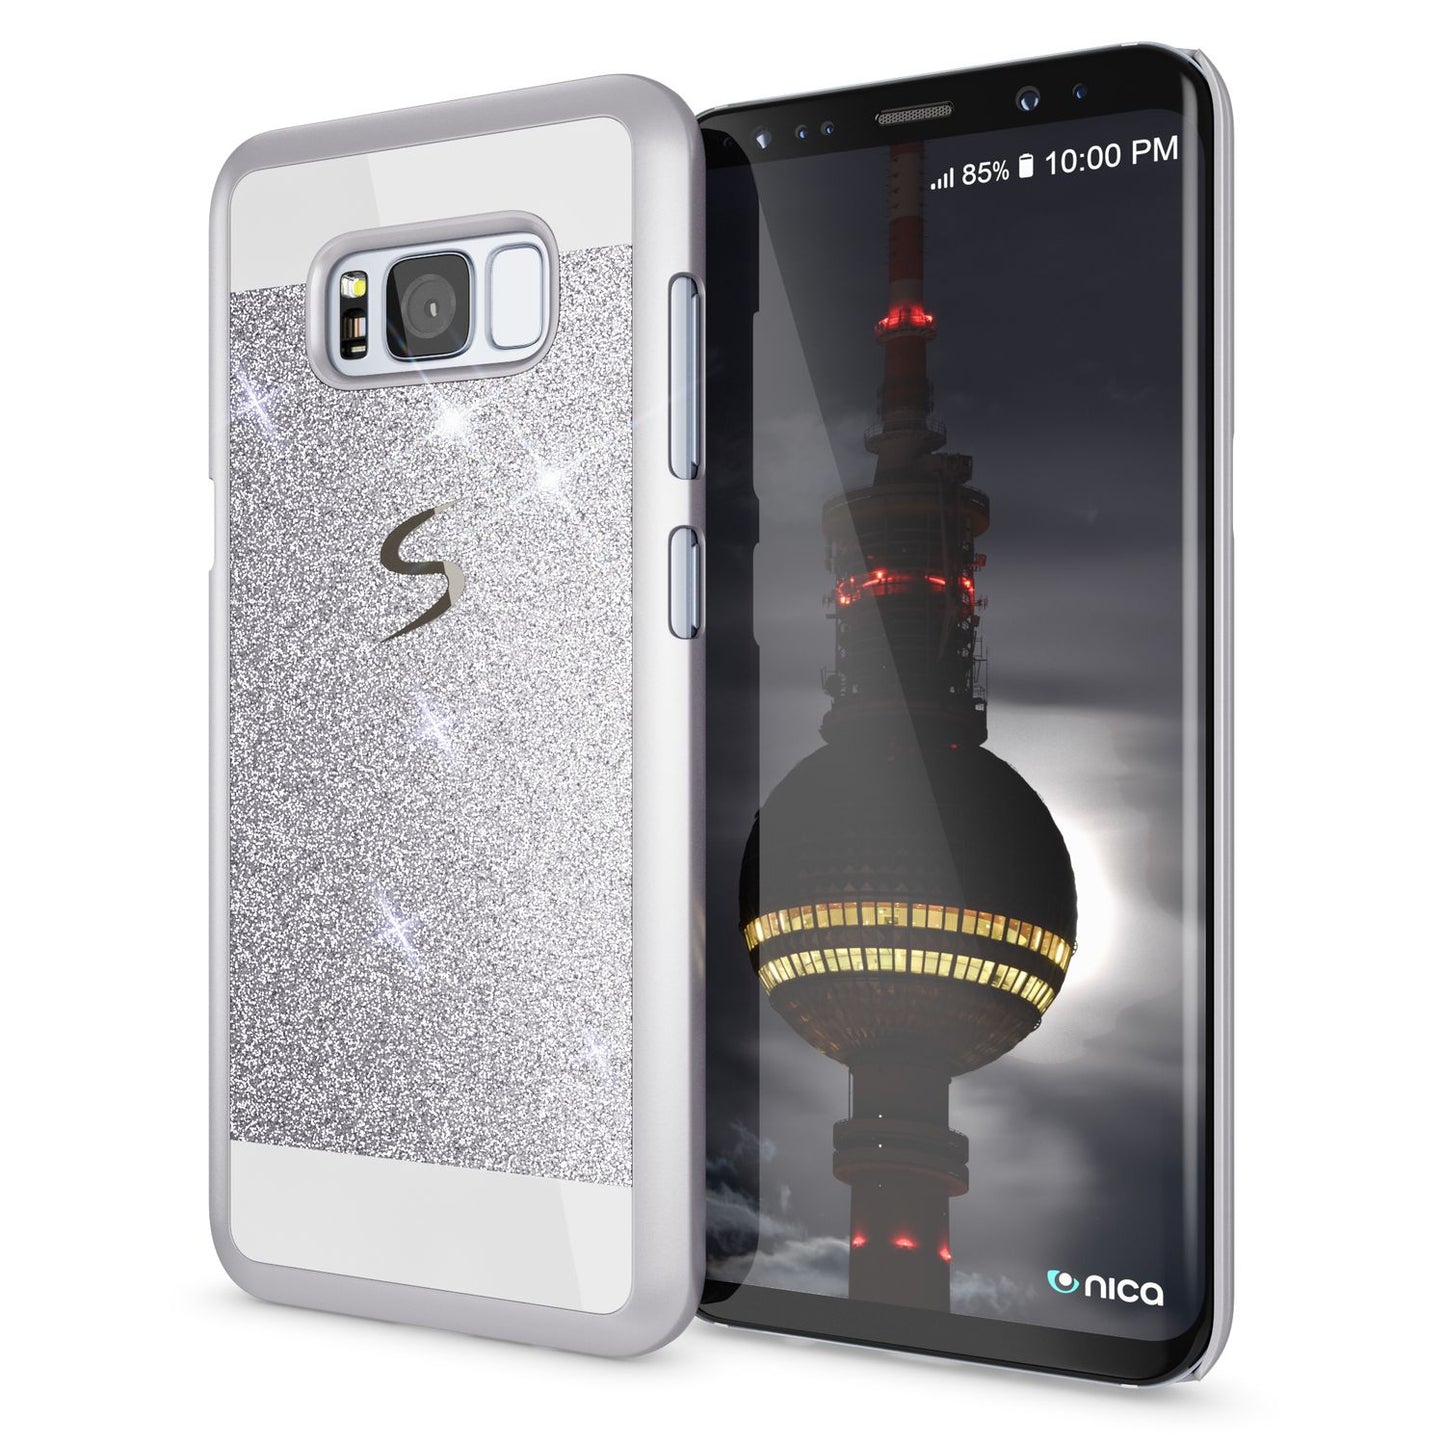 Samsung Galaxy S8 Plus Hülle Handyhülle von NALIA, Glitzer Case Schutzhülle Cover